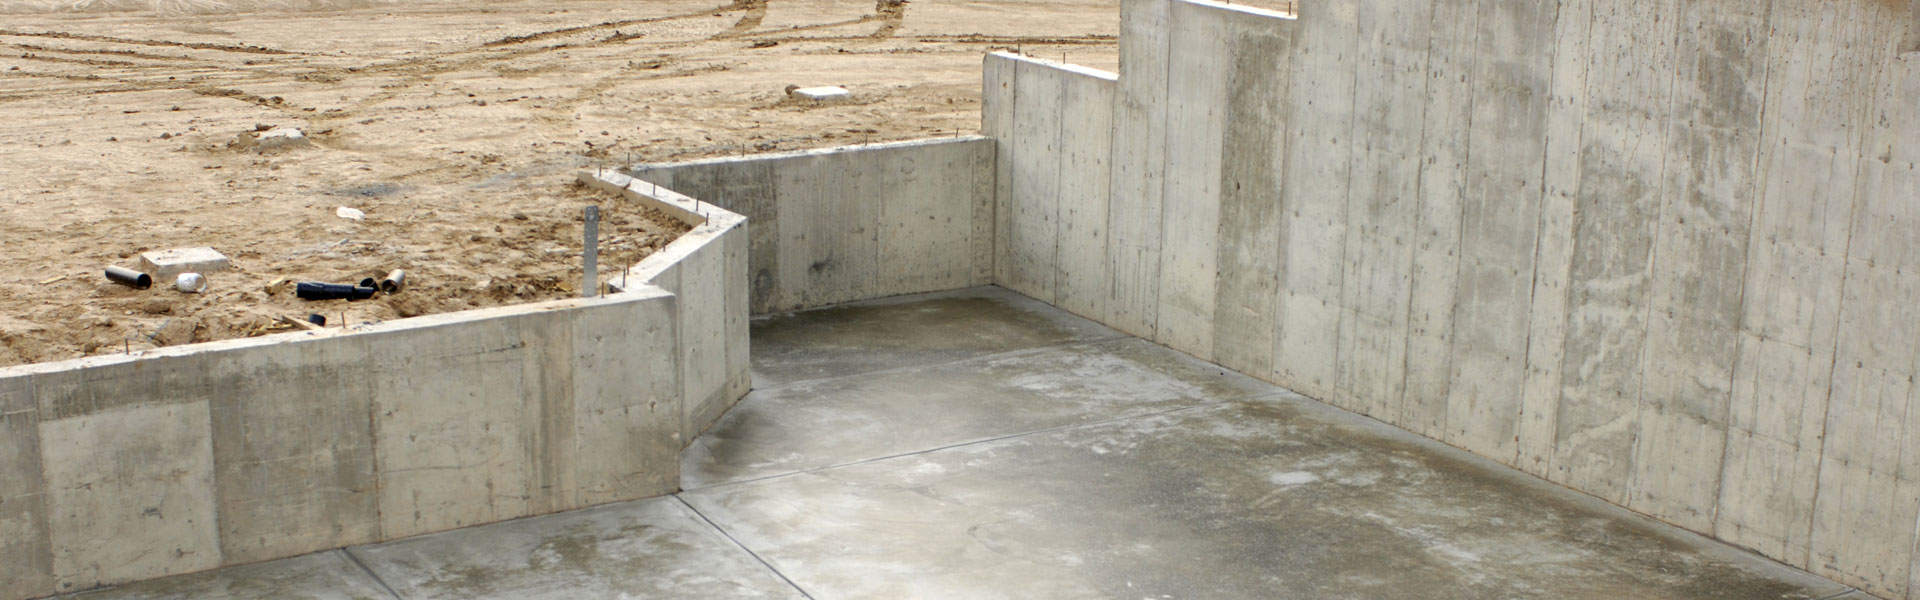 A fresh poured concrete building foundation